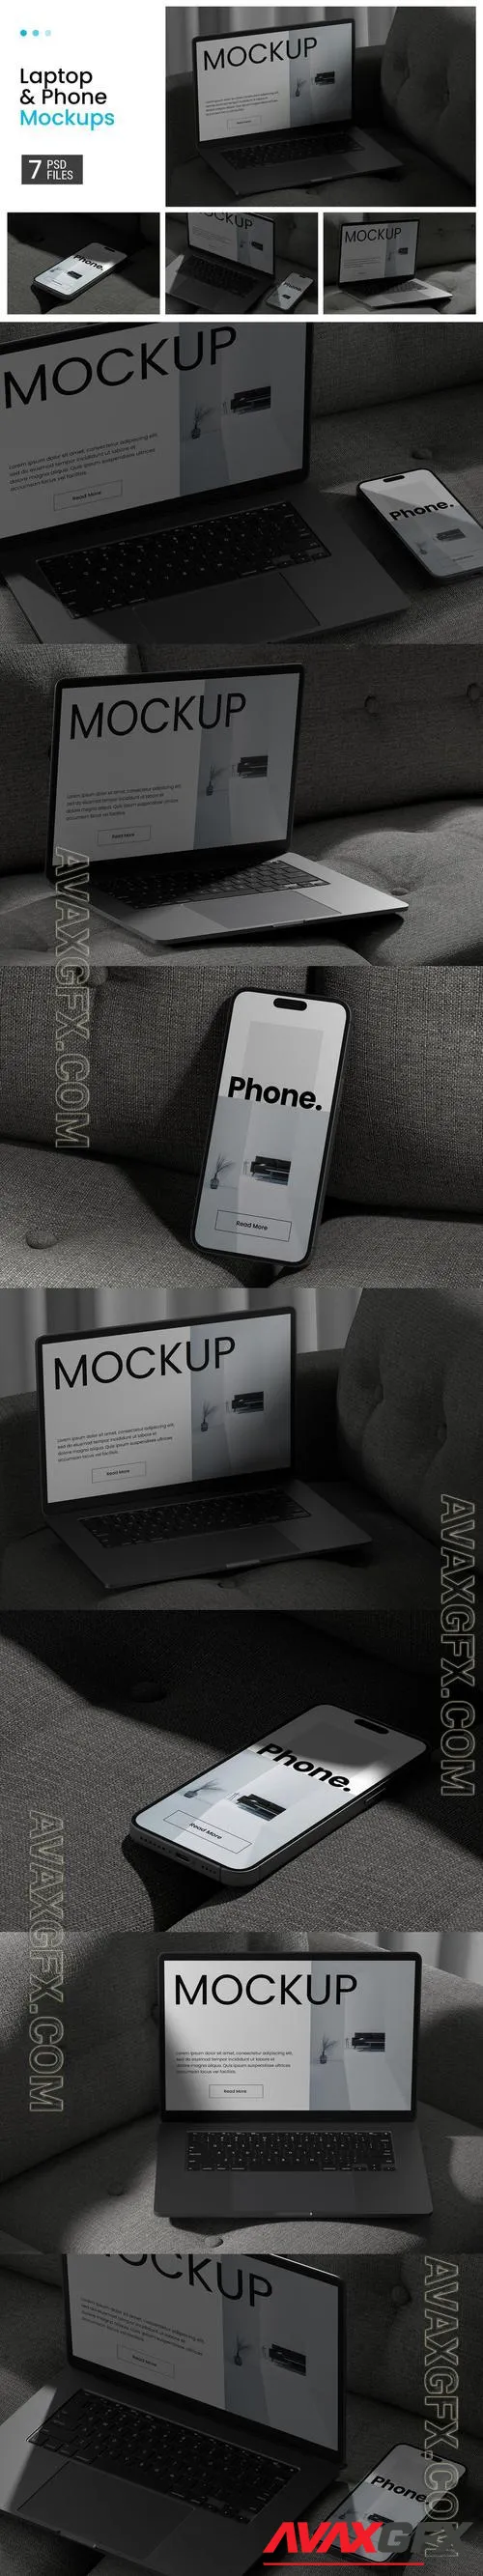 Laptop & Phone Mockups